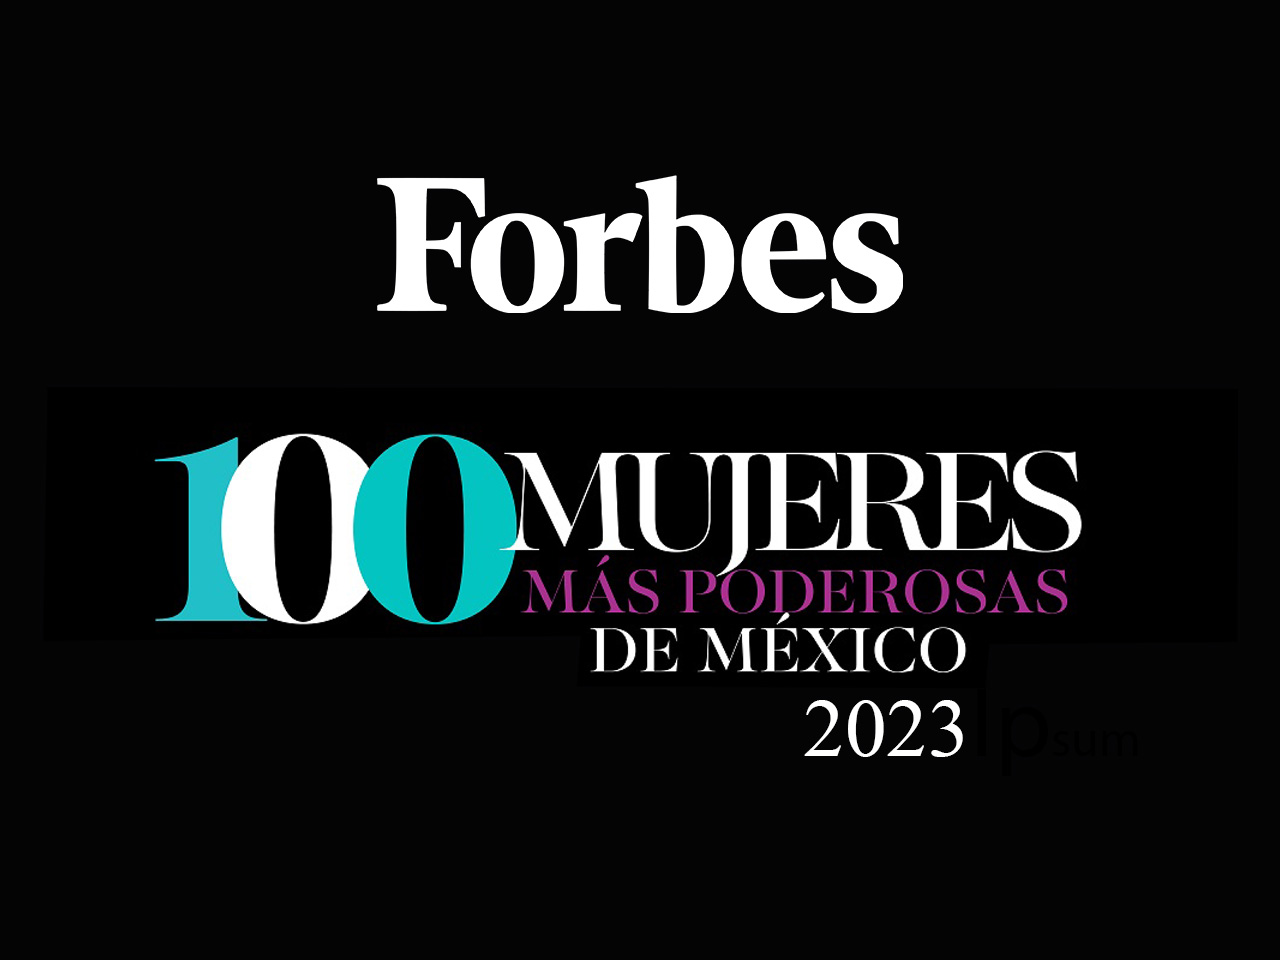 Exalumnas del ITAM en la lista de "Mujeres + Poderosas de México", Forbes 2023